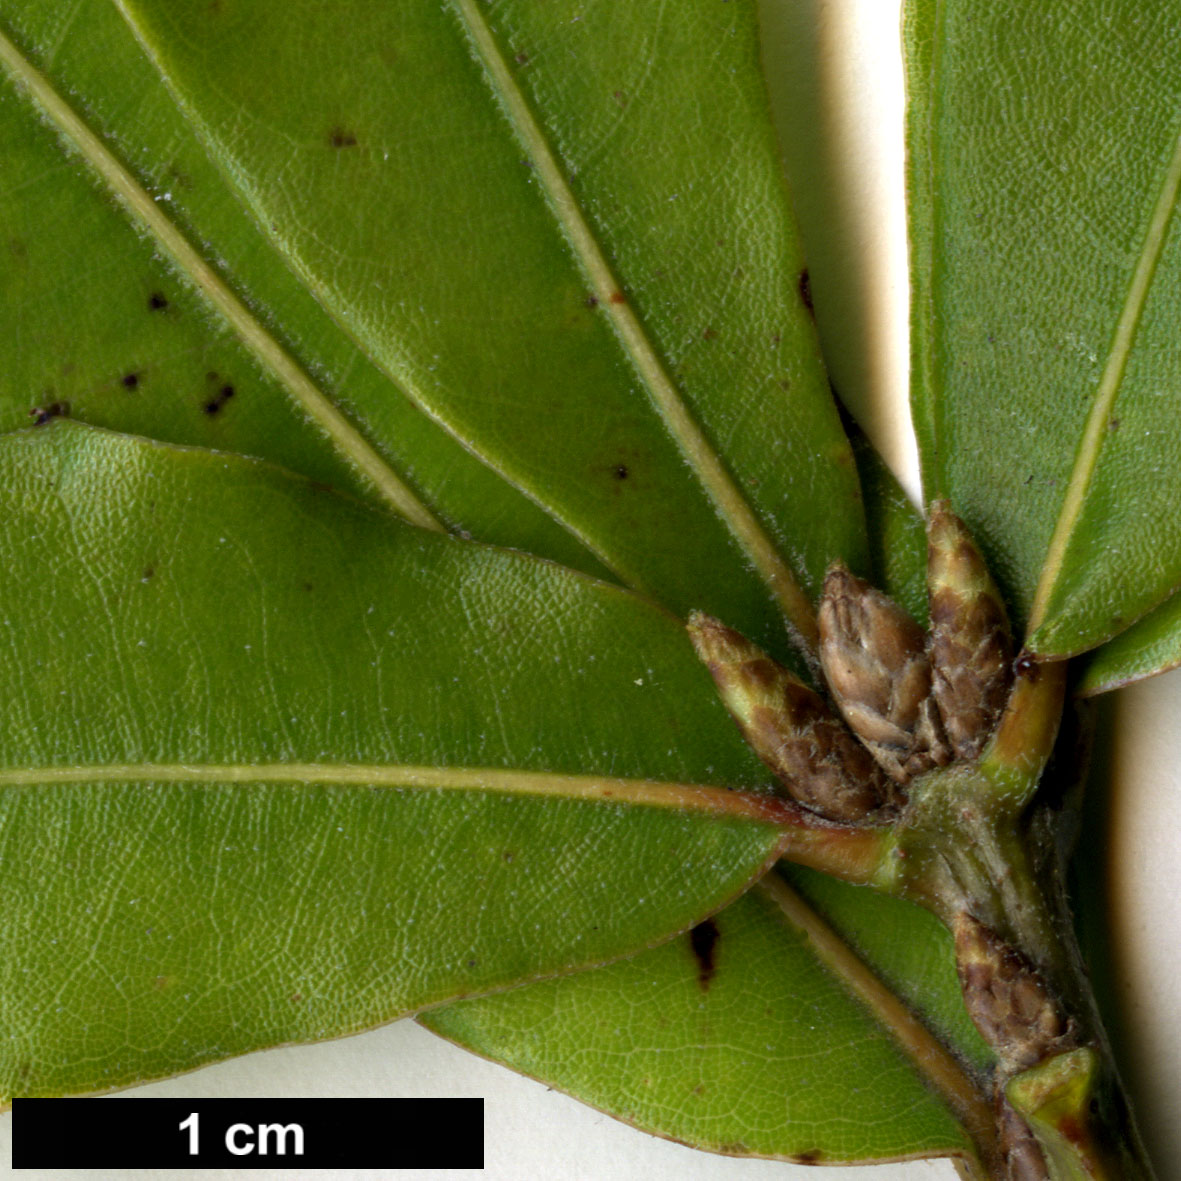 High resolution image: Family: Fagaceae - Genus: Quercus - Taxon: pinnativenulosa